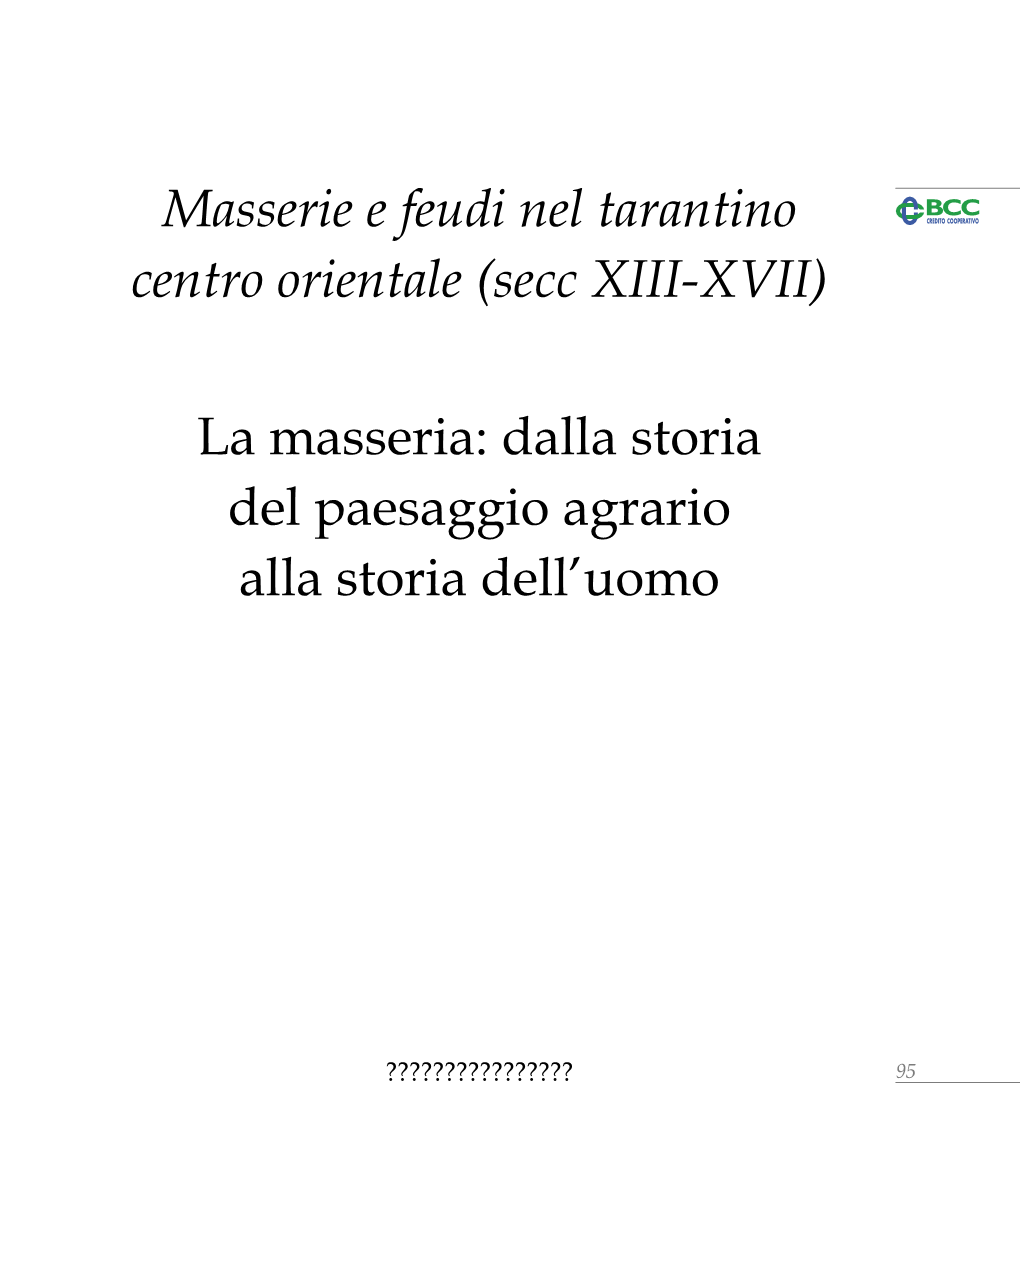 Masserie E Feudi Nel Tarantino Centro Orientale (Secc XIII-XVII)